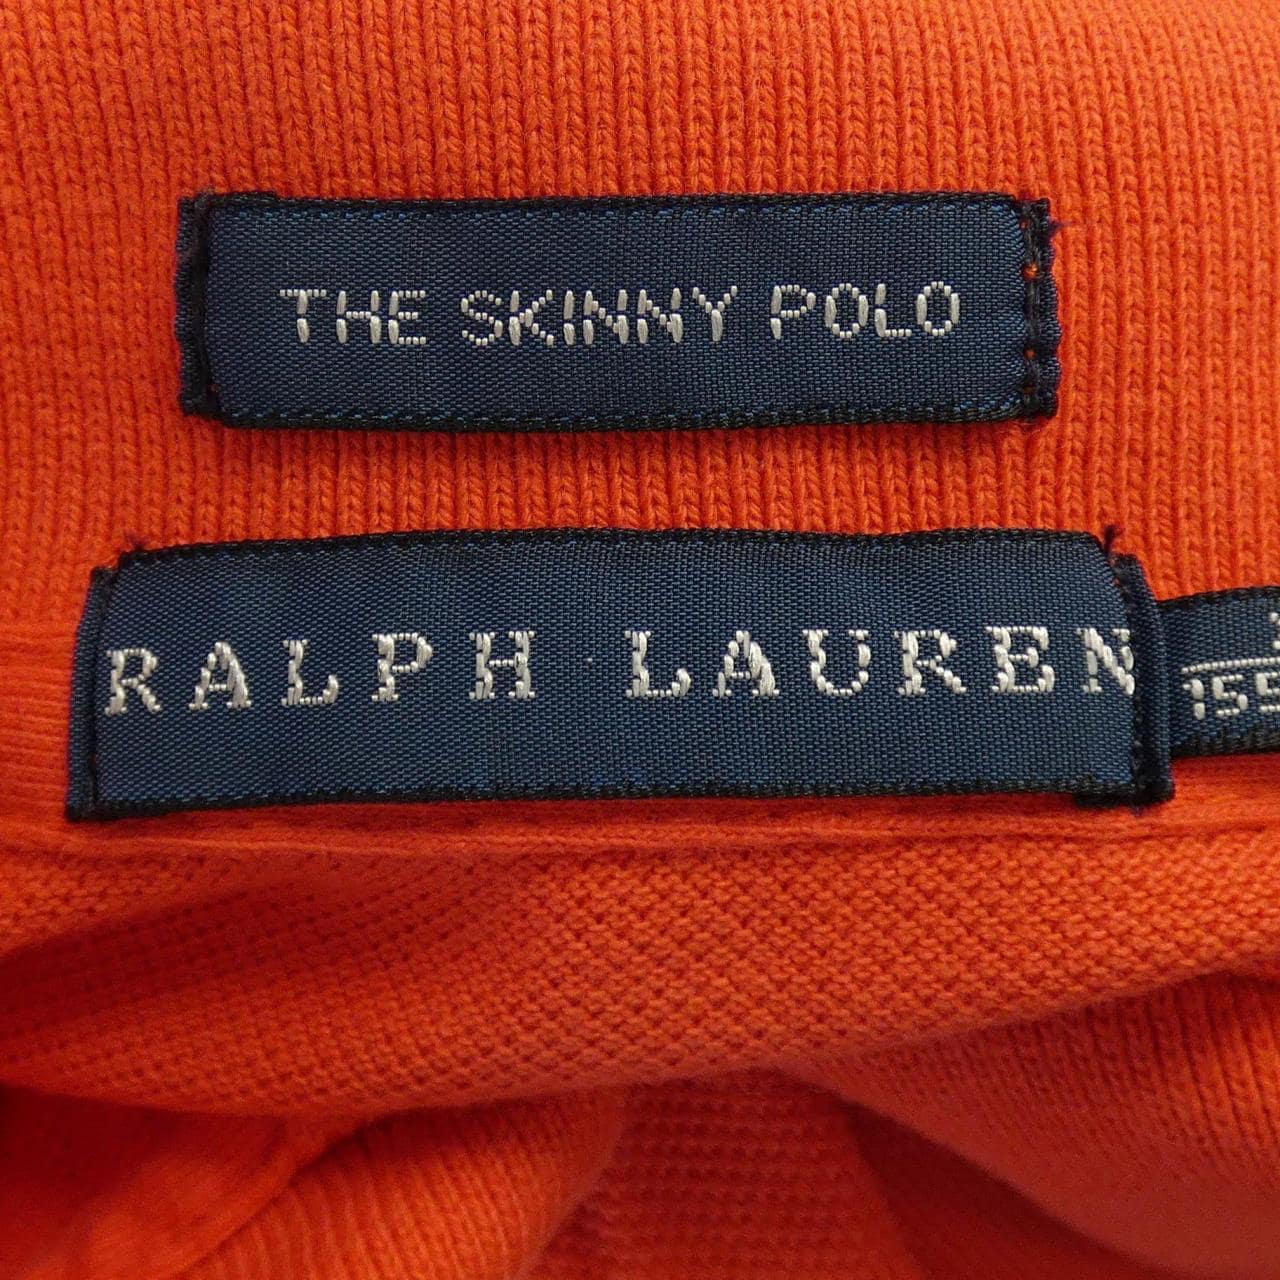 Ralph Lauren RALPH LAUREN polo shirt